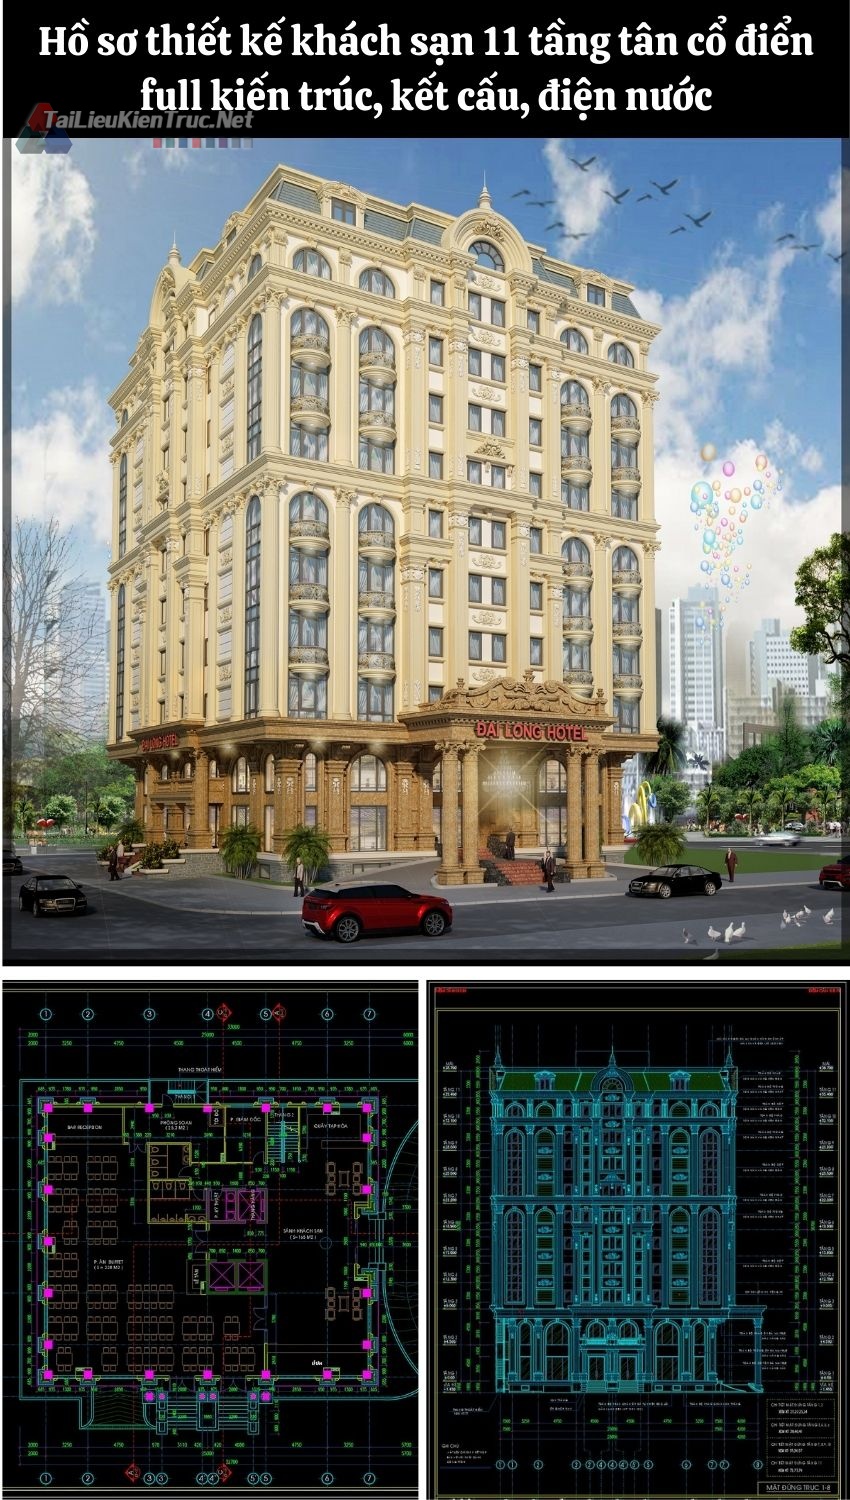 Hồ sơ thiết kế khách sạn 11 tầng tân cổ điển full kiến trúc, kết cấu, điện nước